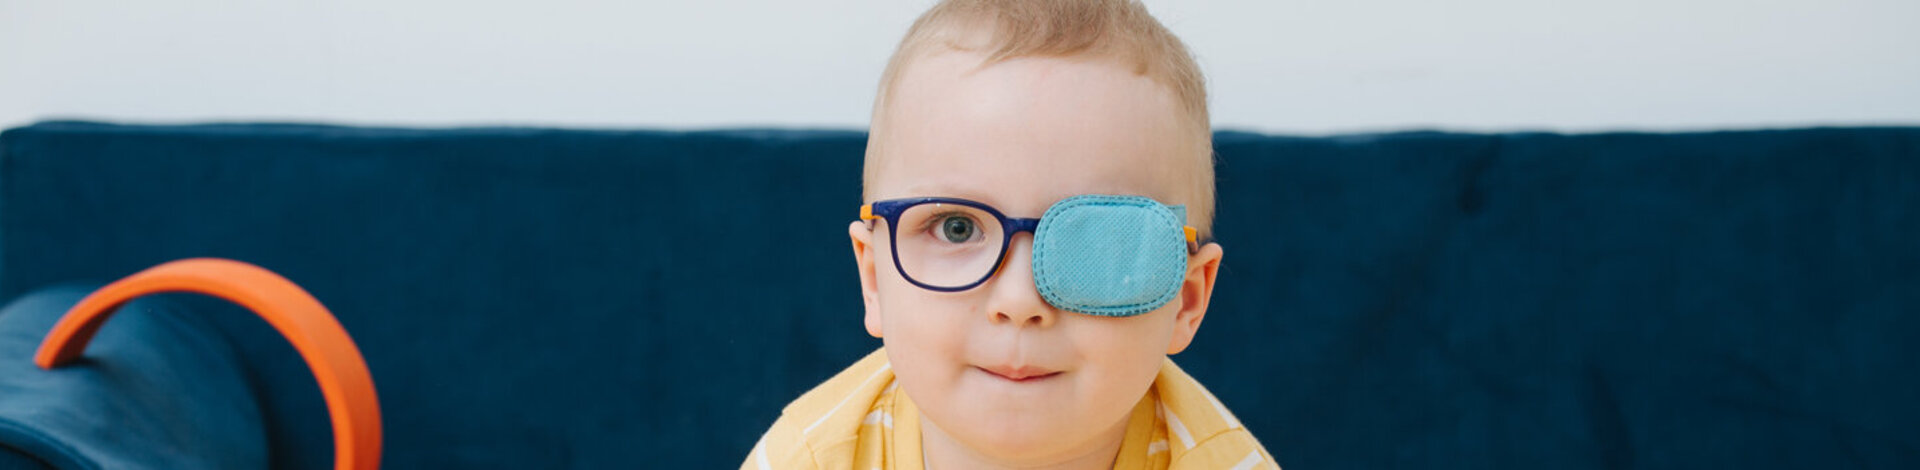 Ein Kleinkind trägt eine Brille, und ein Auge ist mit einem Pflaster zugeklebt. Amblyopie ist eine häufige Sehstörung bei Kindern. 